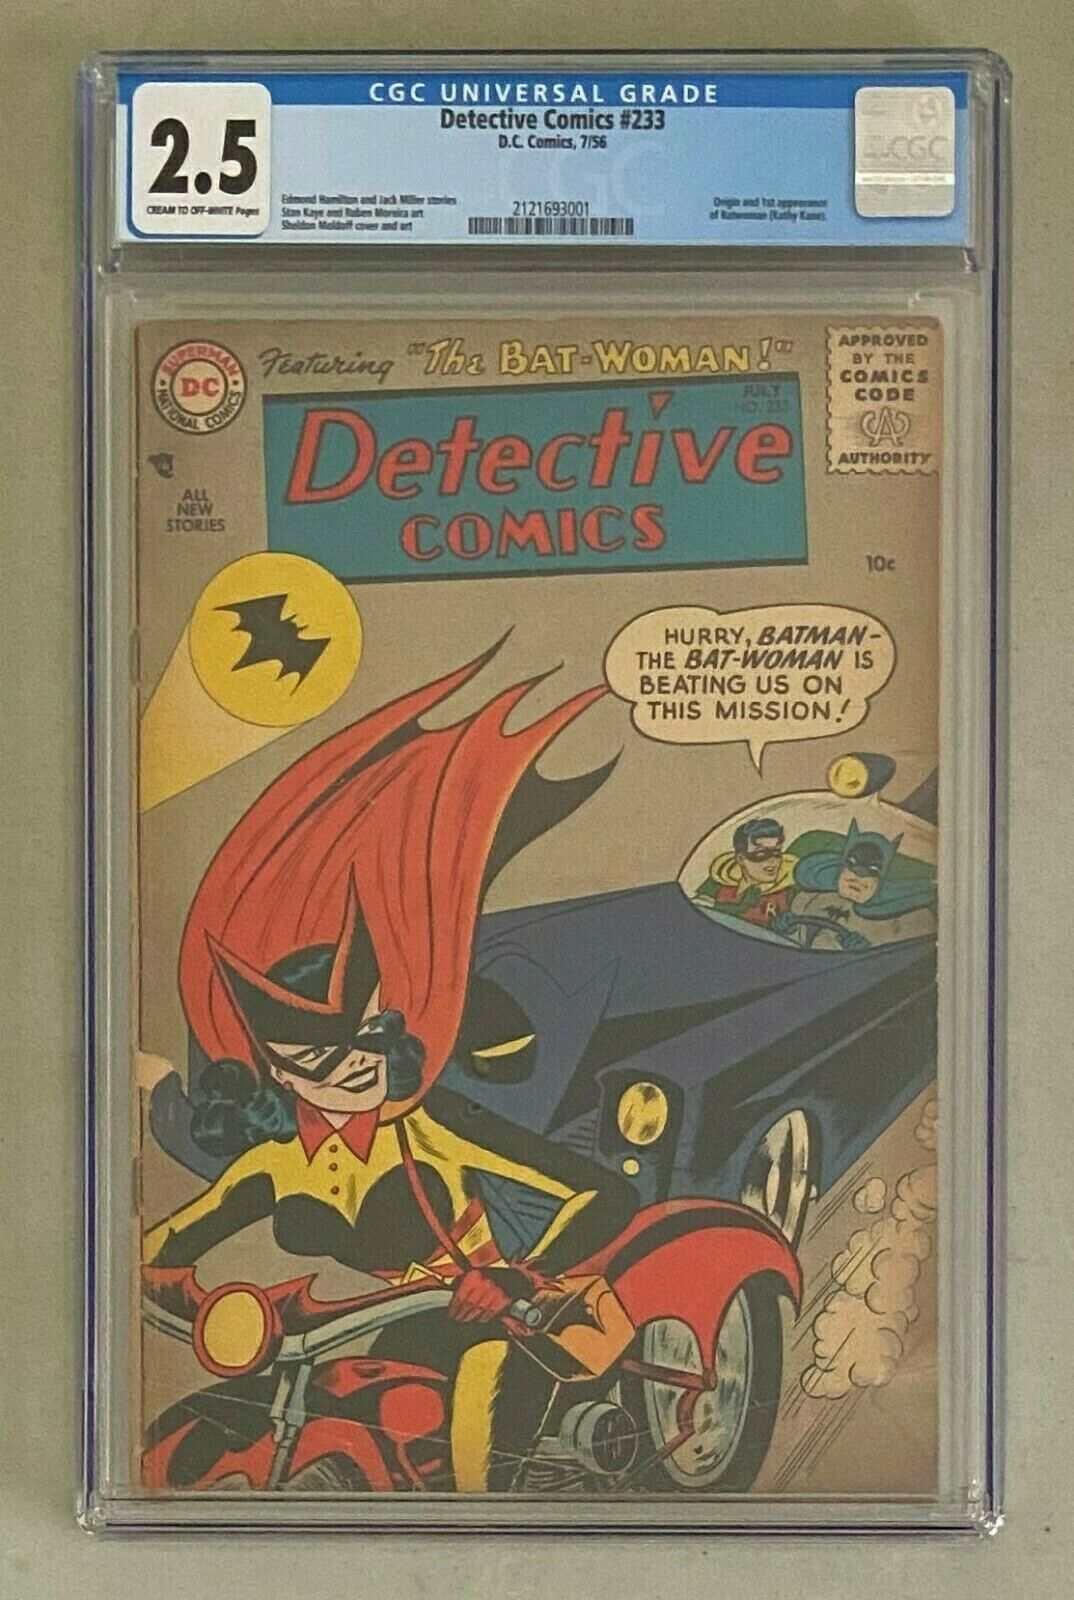 DETECTIVE COMICS 233 DC Comics 1956 Batman CGC 25 Batwoman 1st Appearance